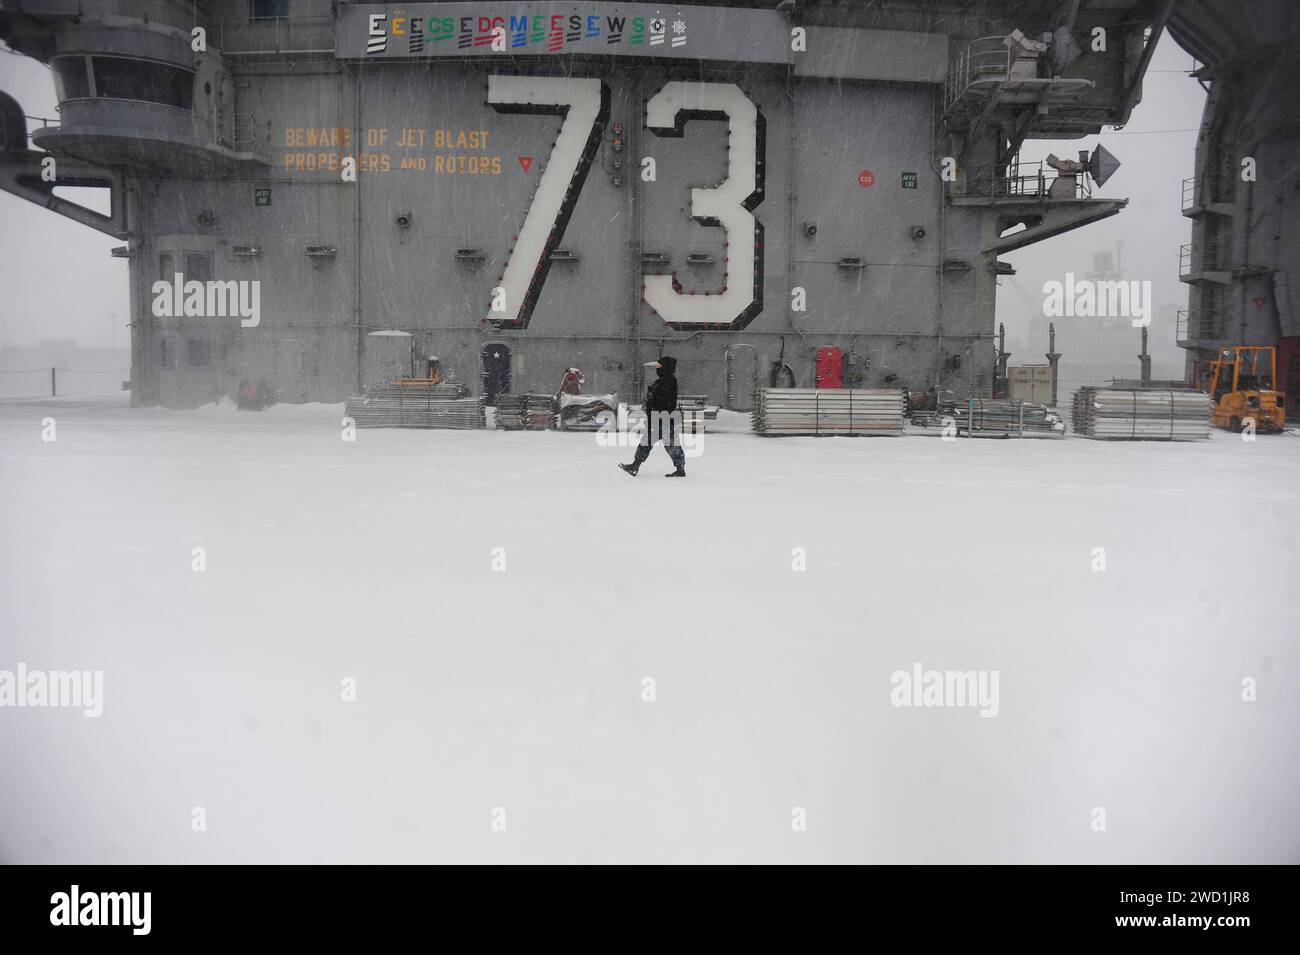 Der Airman führt während eines Wintersturms eine Sicherheitsreise an Bord des Flugdecks der USS George Washington durch. Stockfoto